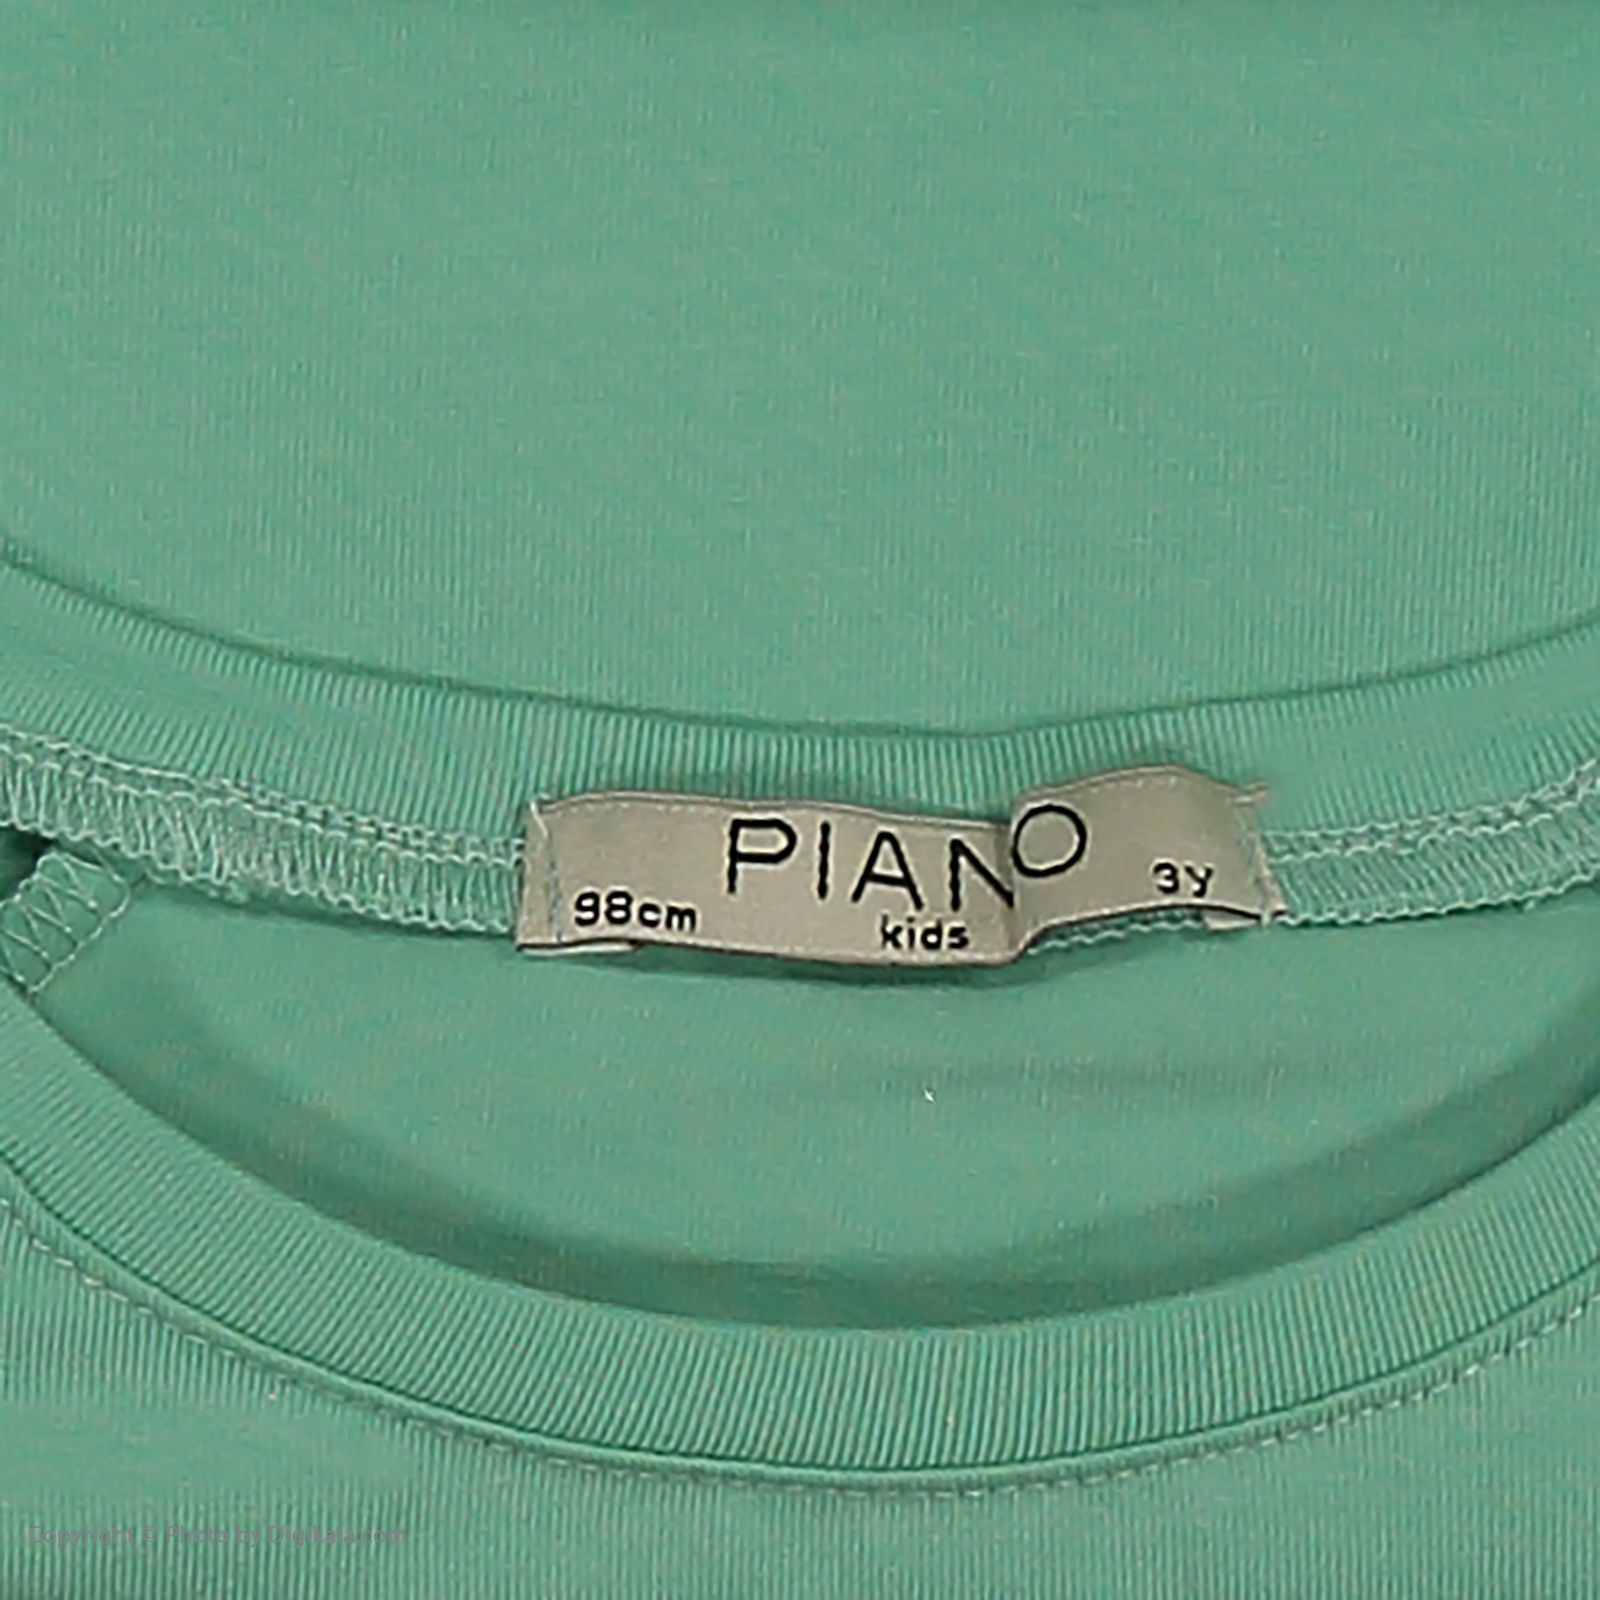 تی شرت دخترانه پیانو مدل 1833-41 -  - 5